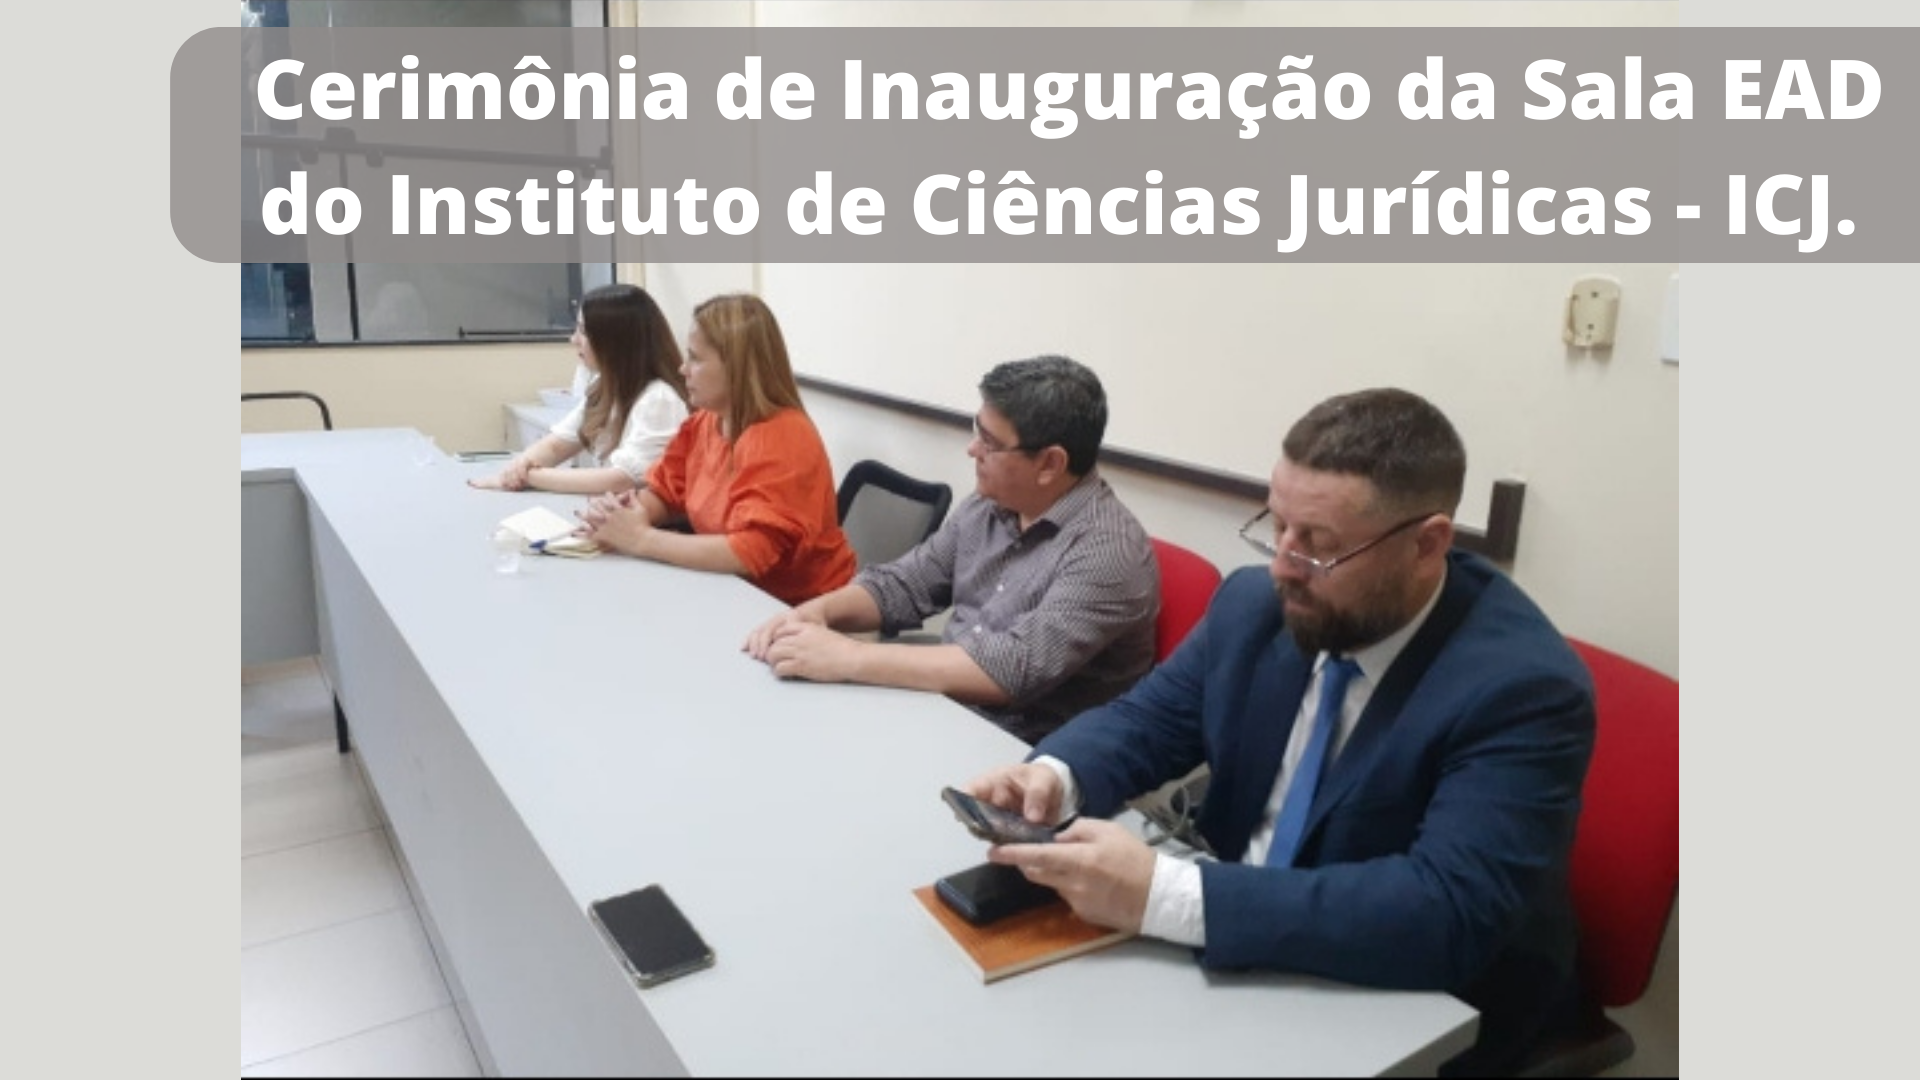 Cerimônia de Inauguração da Sala EAD , do Instituto de Ciências Jurídicas - ICJ.